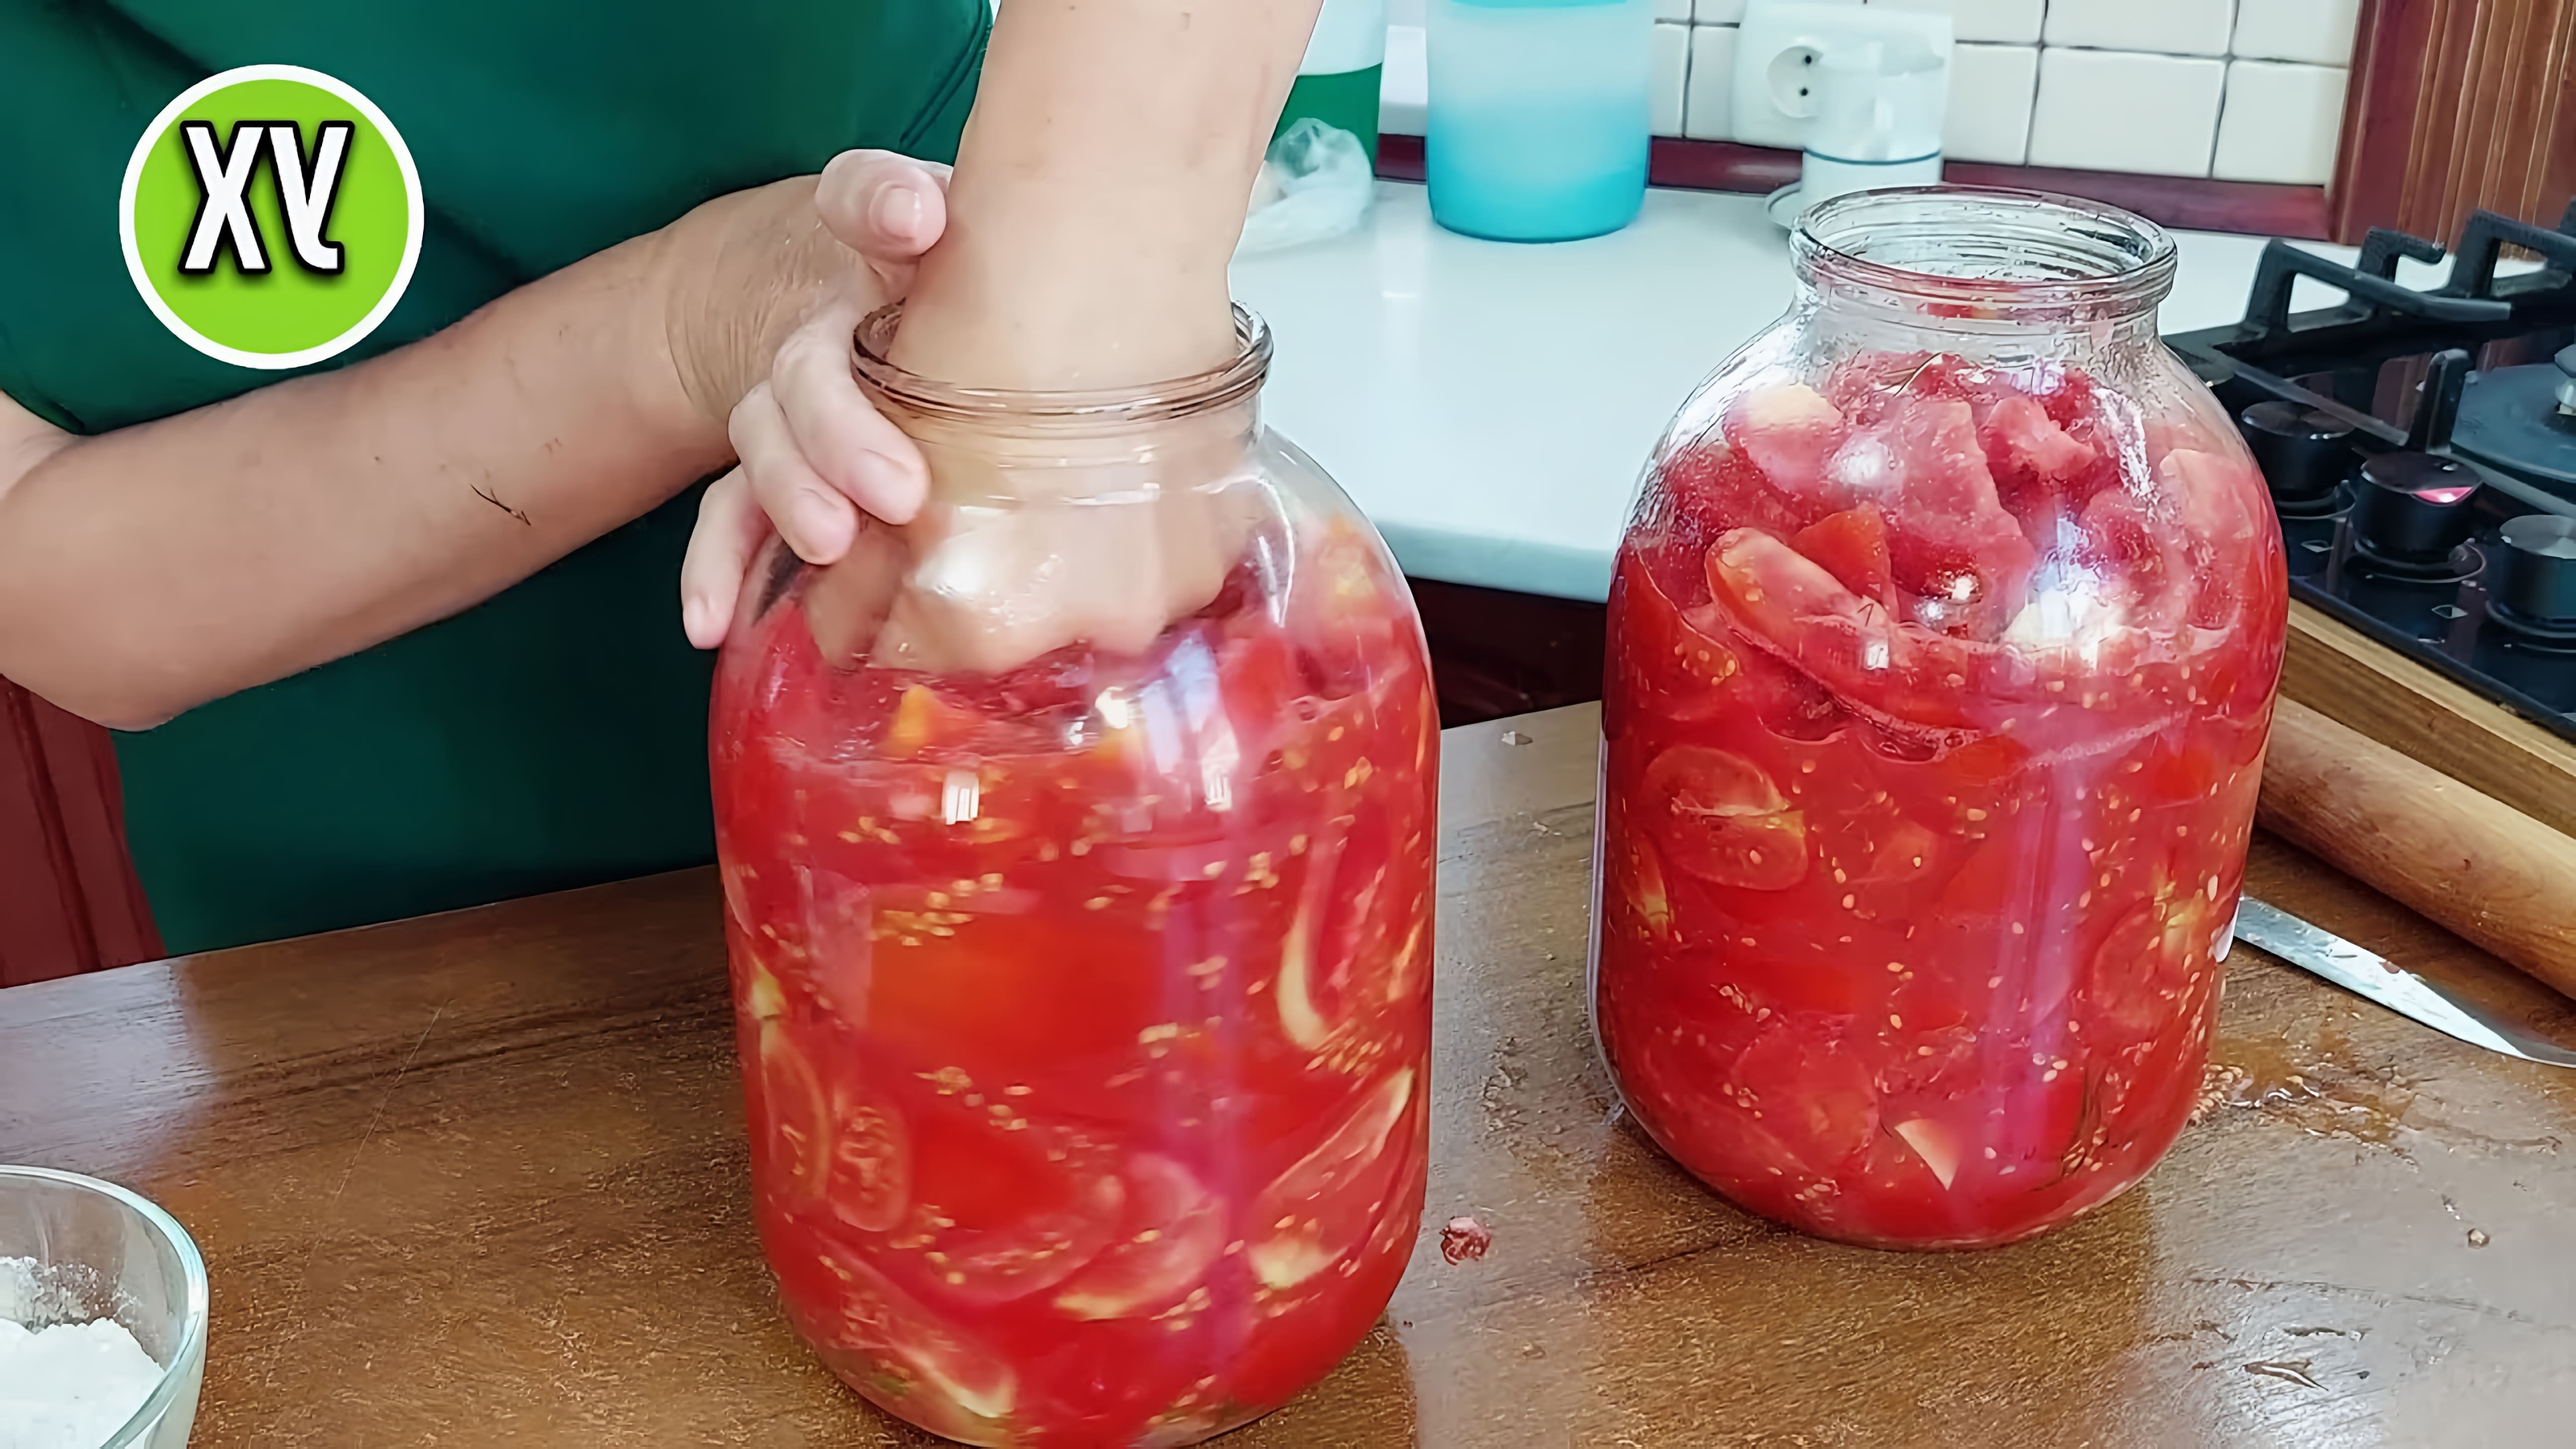 Видео демонстрирует старый рецепт консервирования помидоров на зиму путем укладки их в бутылки